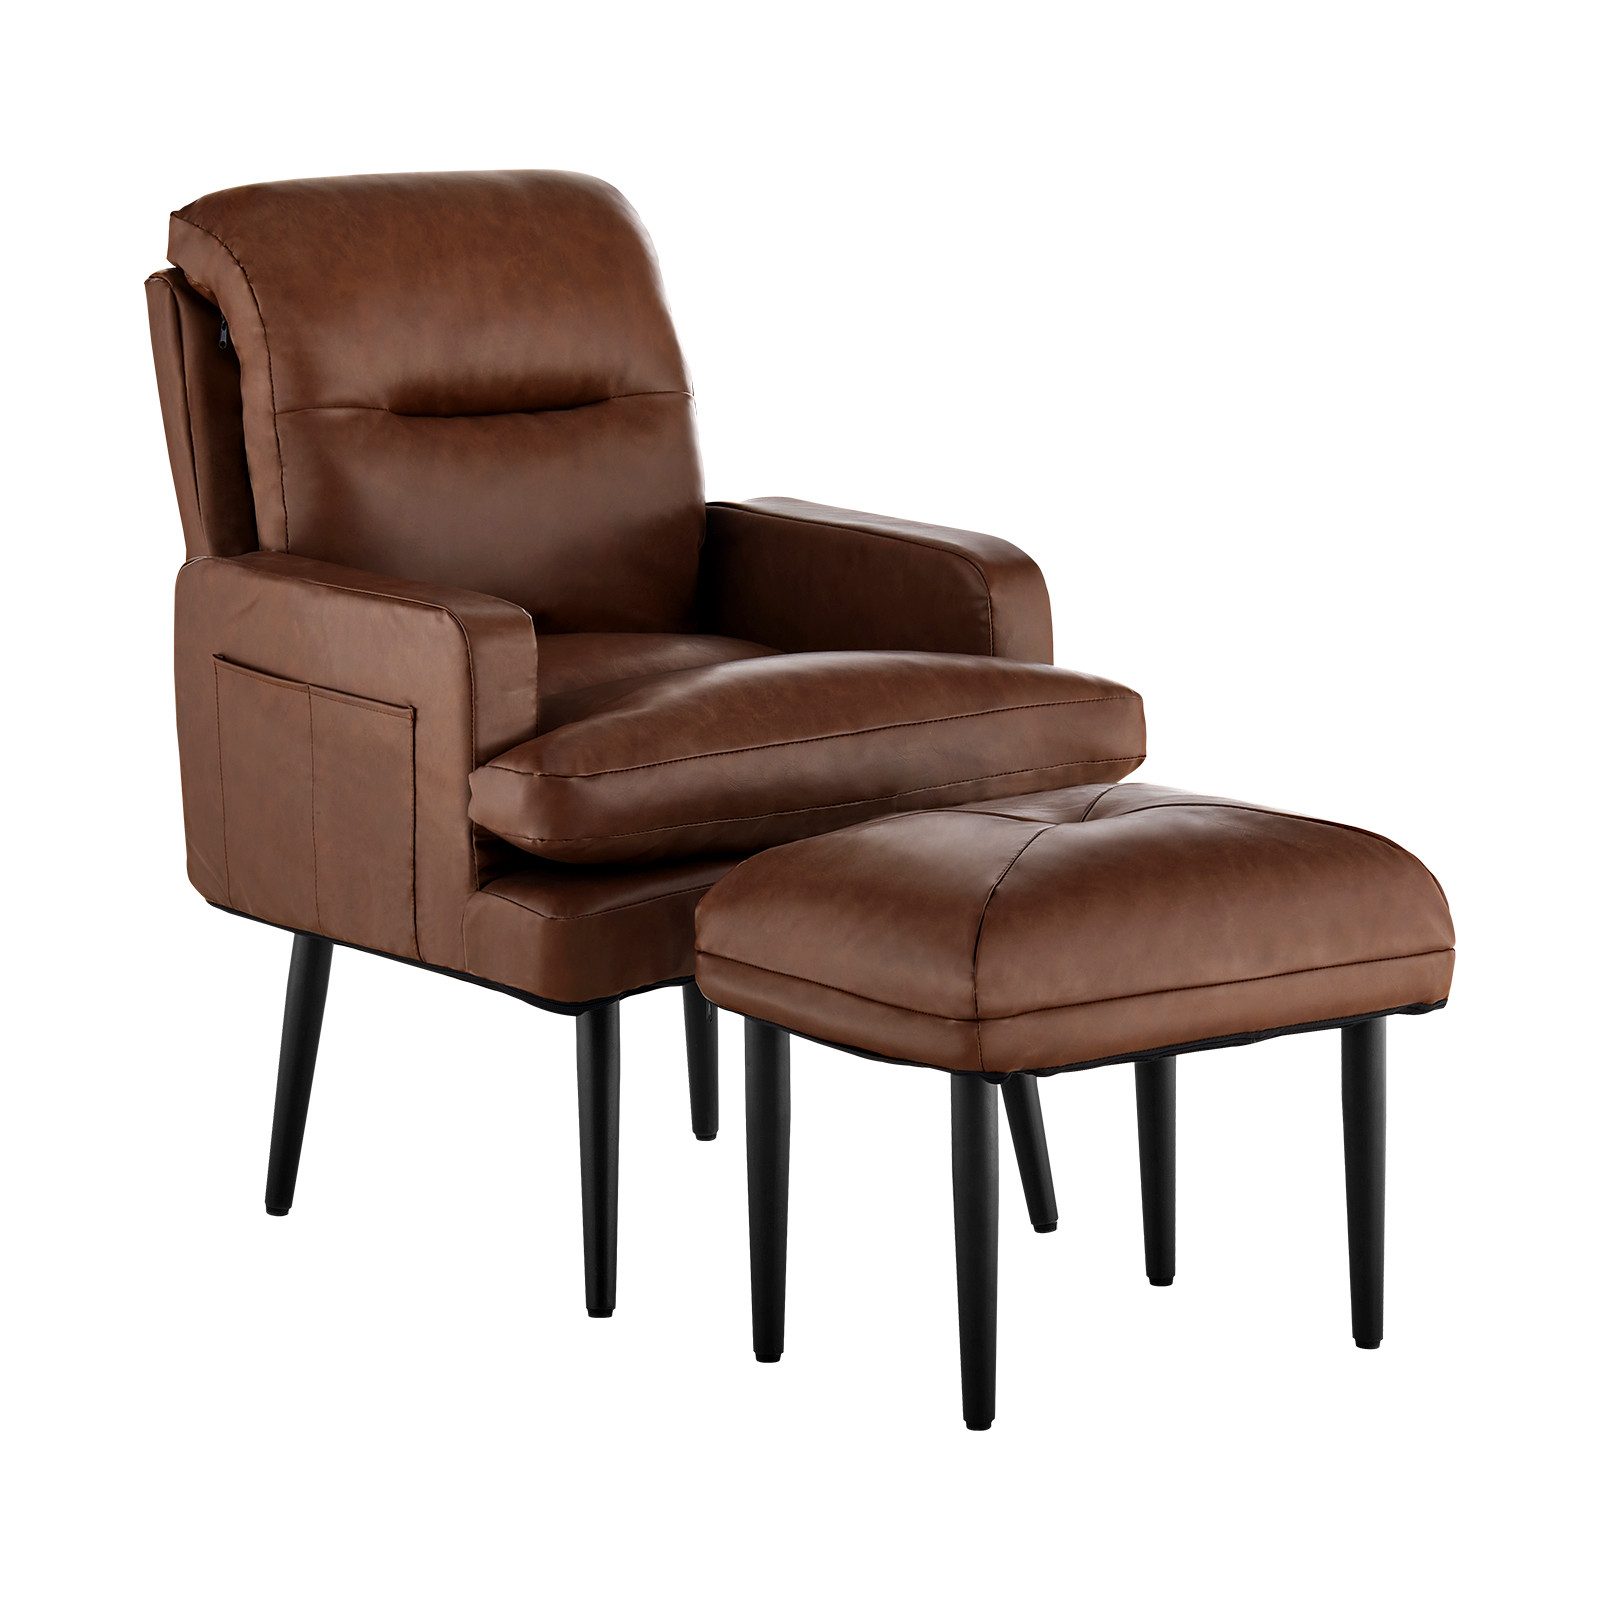 CLIPOP Relaxsessel Kunstleder Sessel Set (Relaxsessel mit Hocker), Fernsehsessel mit verstellbarer Rückenlehne, Sessel für Wohnzimmer